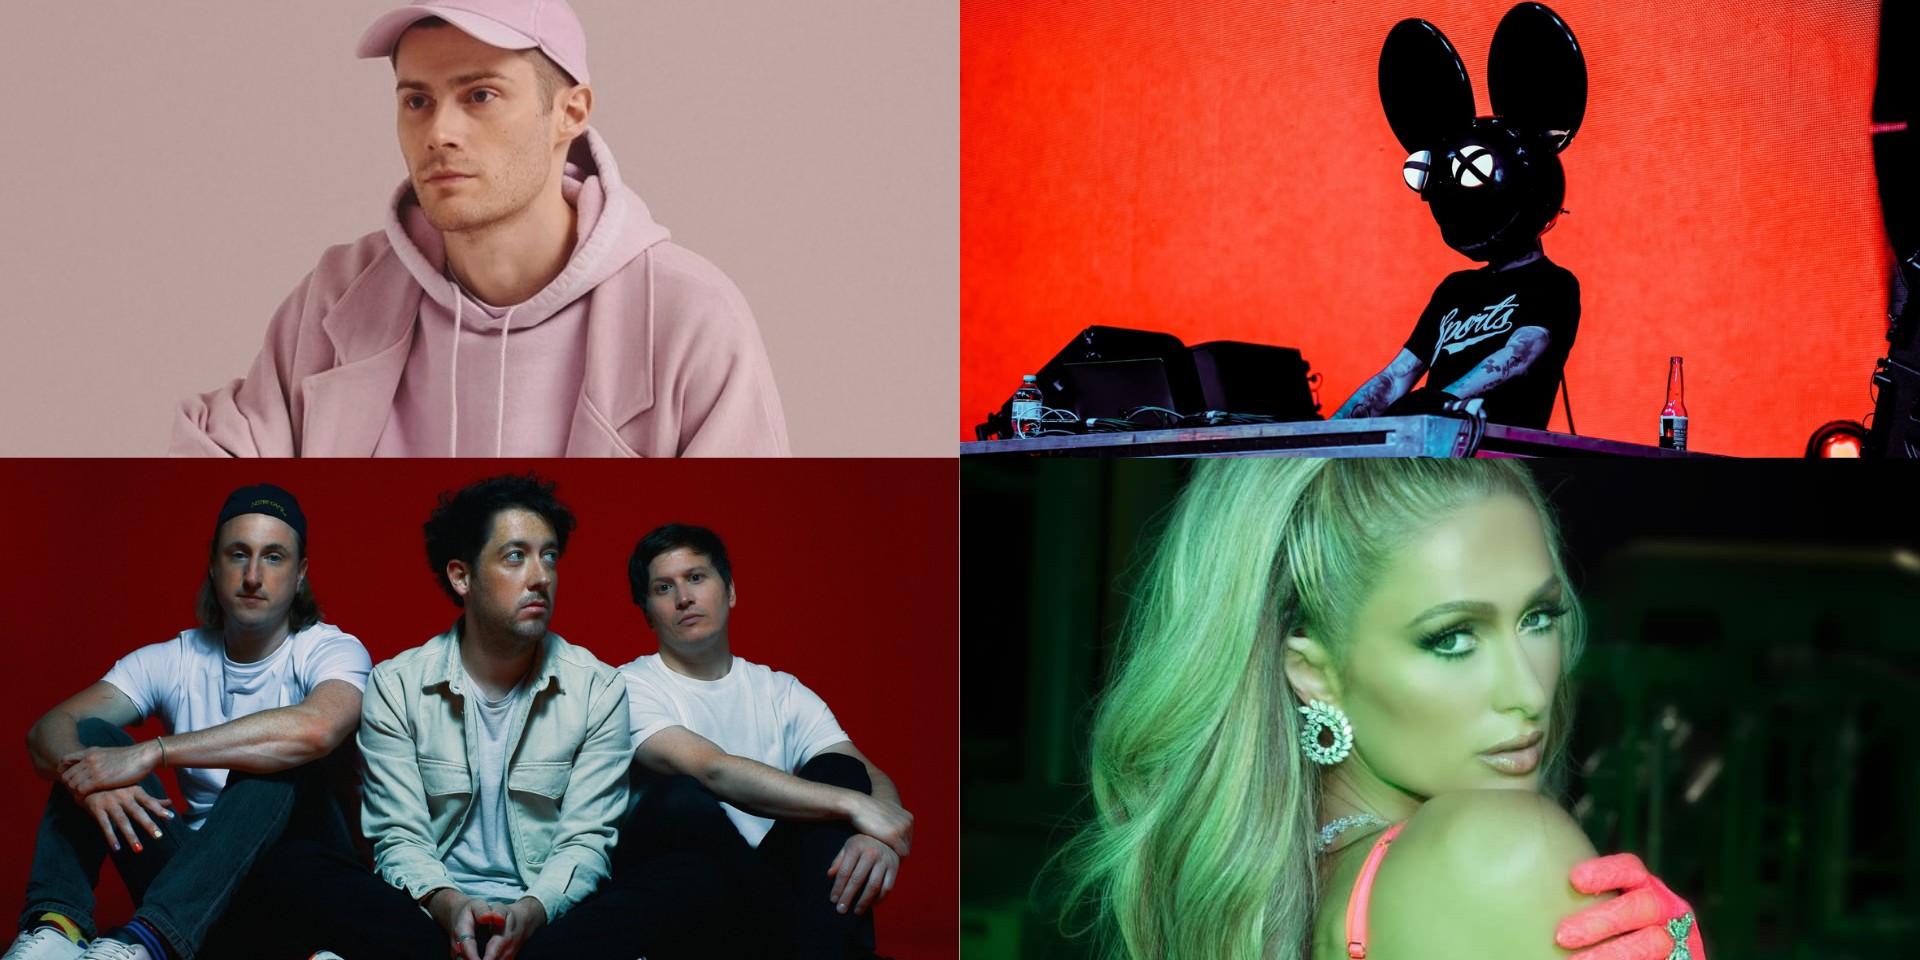 Decentraland announces Metaverse Festival featuring Deadmau5, Paris Hilton, The Wombats, RAC, and more